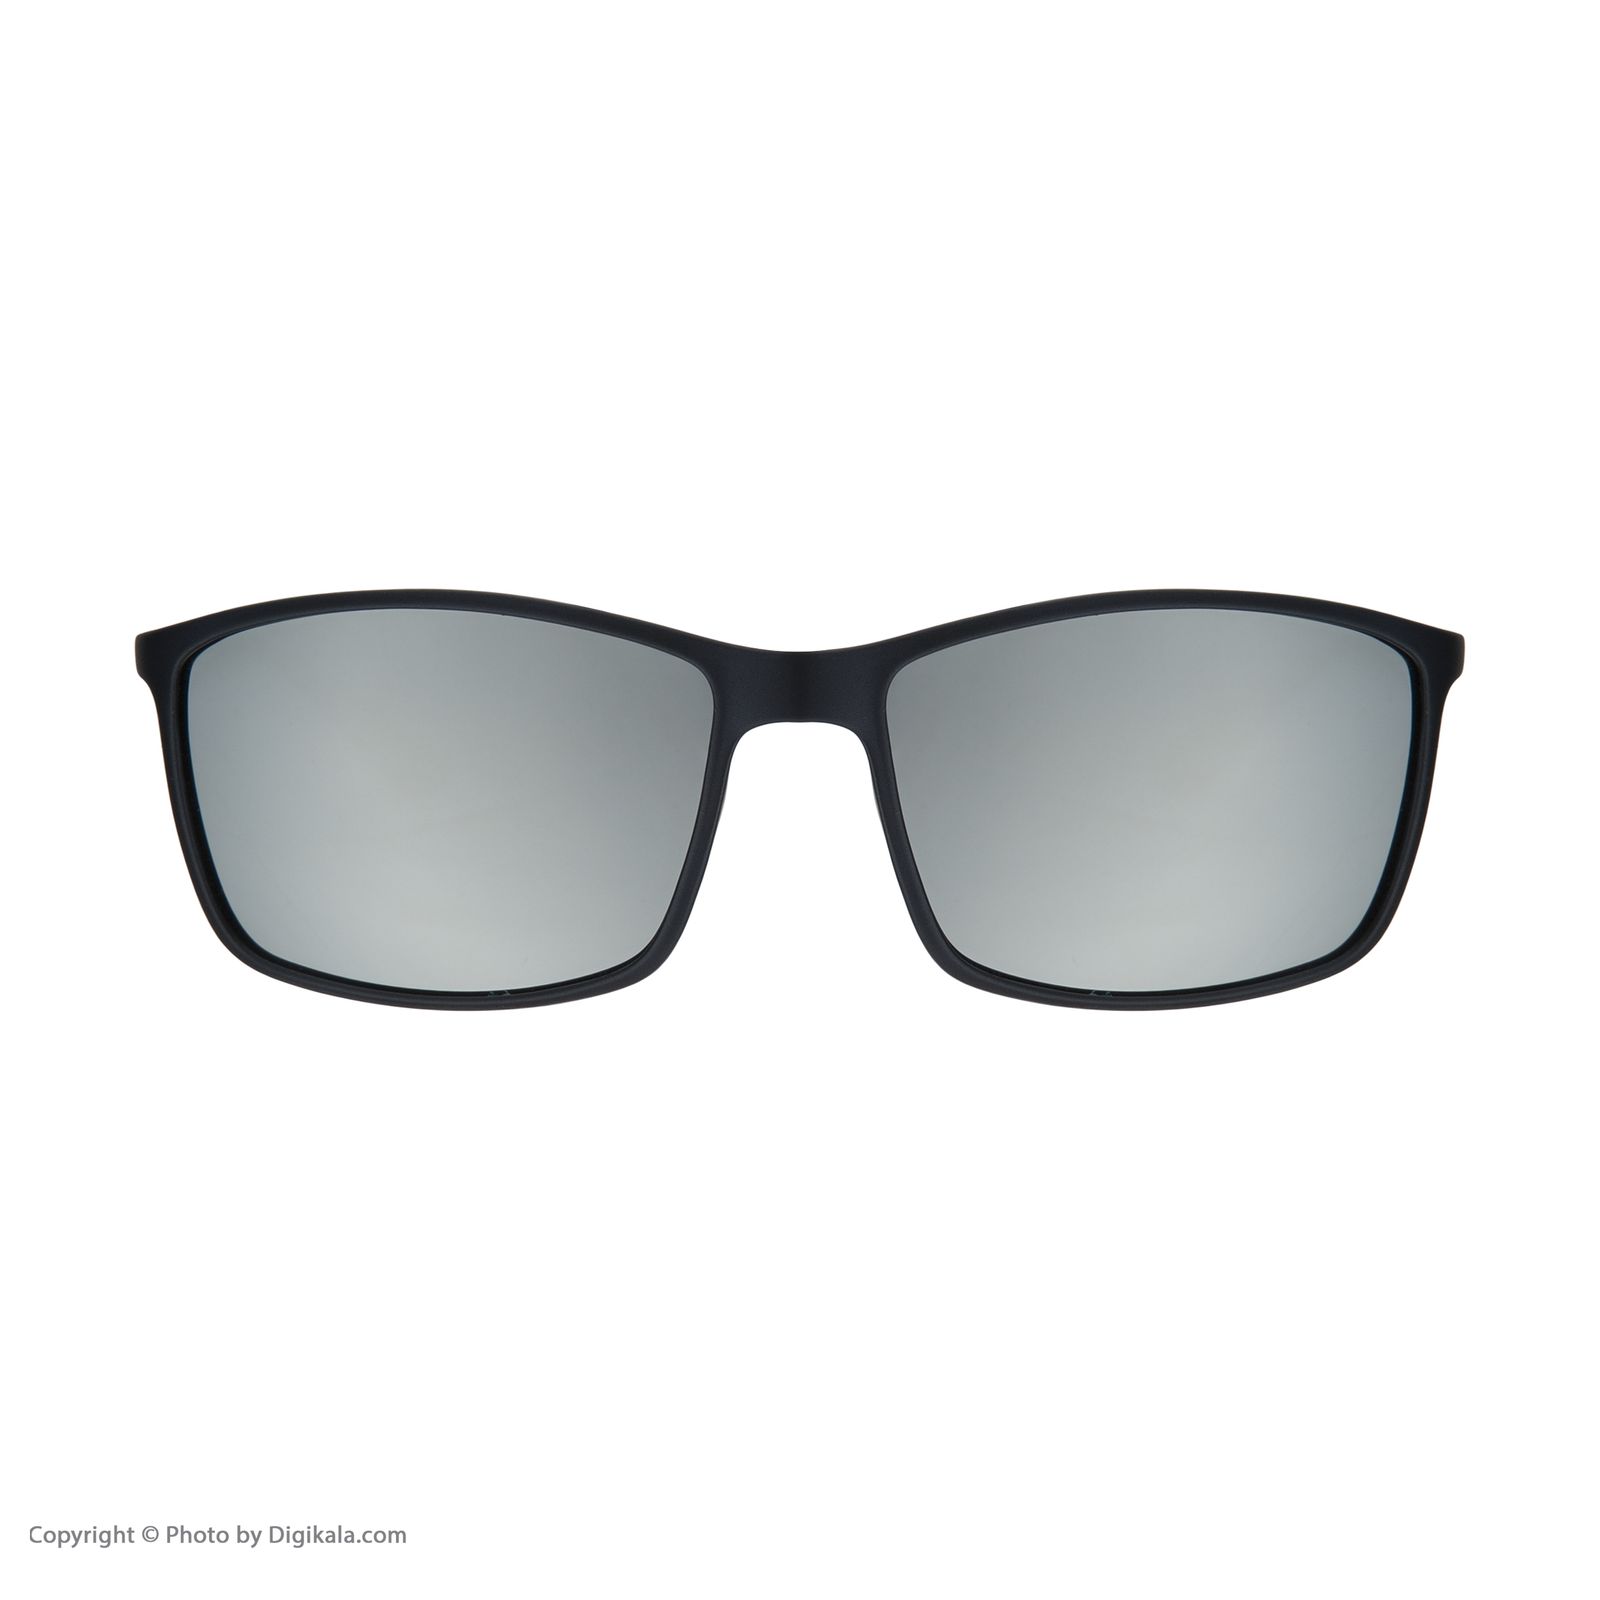 عینک آفتابی مردانه کلارک بای تروی کولیزوم مدل k4051-c2 -  - 2